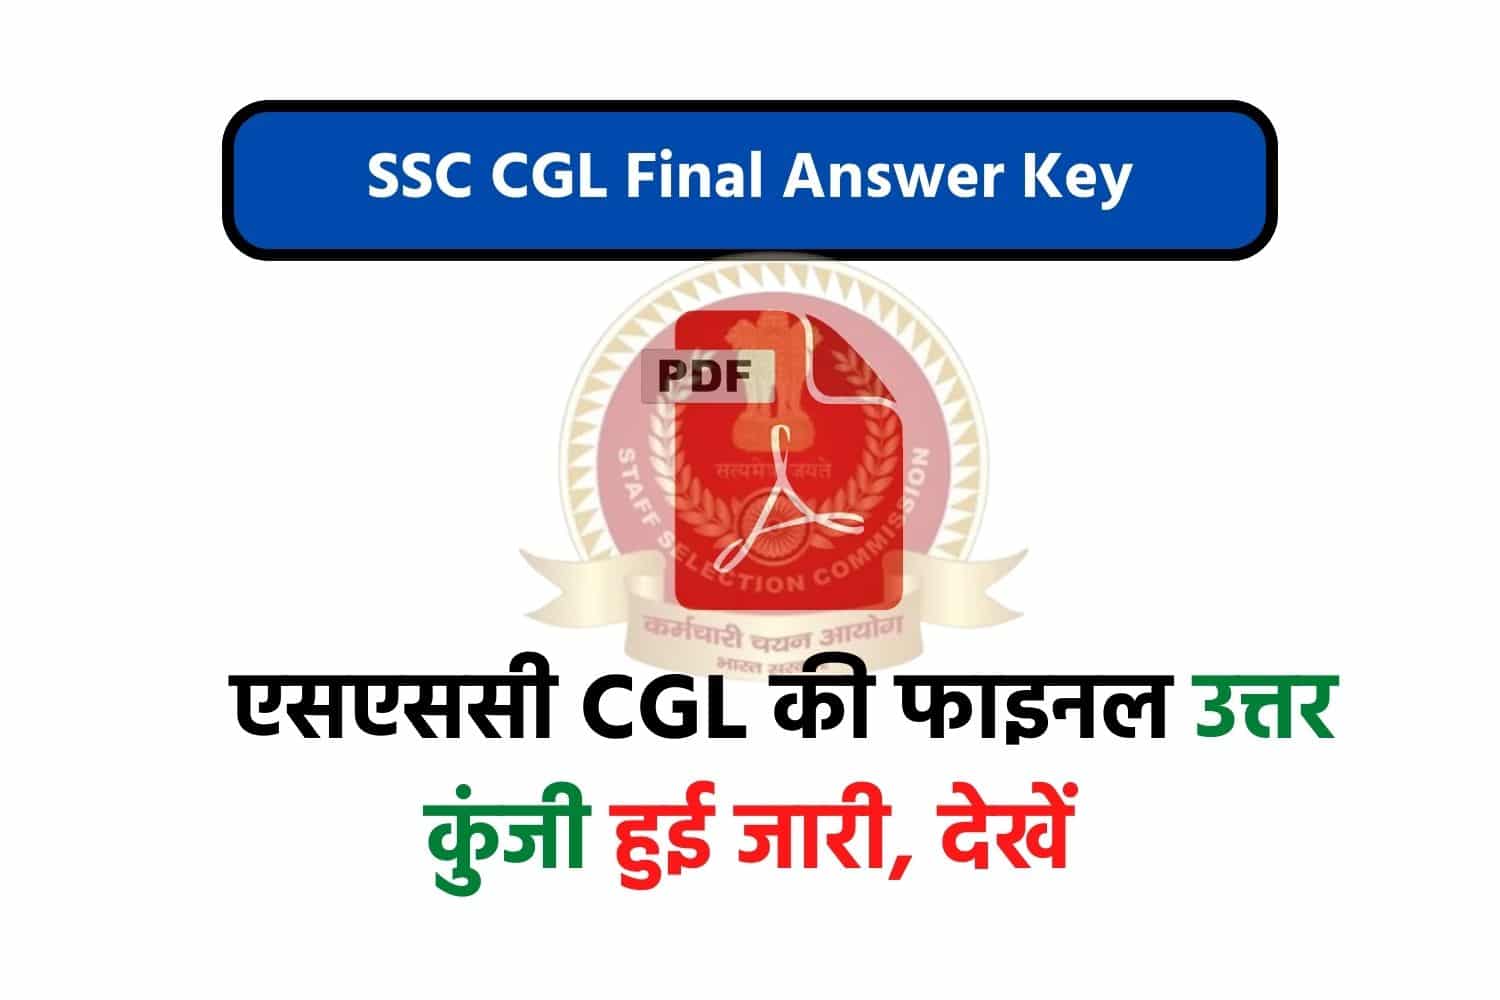 SSC CGL 2021 Final Answer Key | एसएससी सीजीएल की फाइनल उत्तर कुंजी जारी, देखें